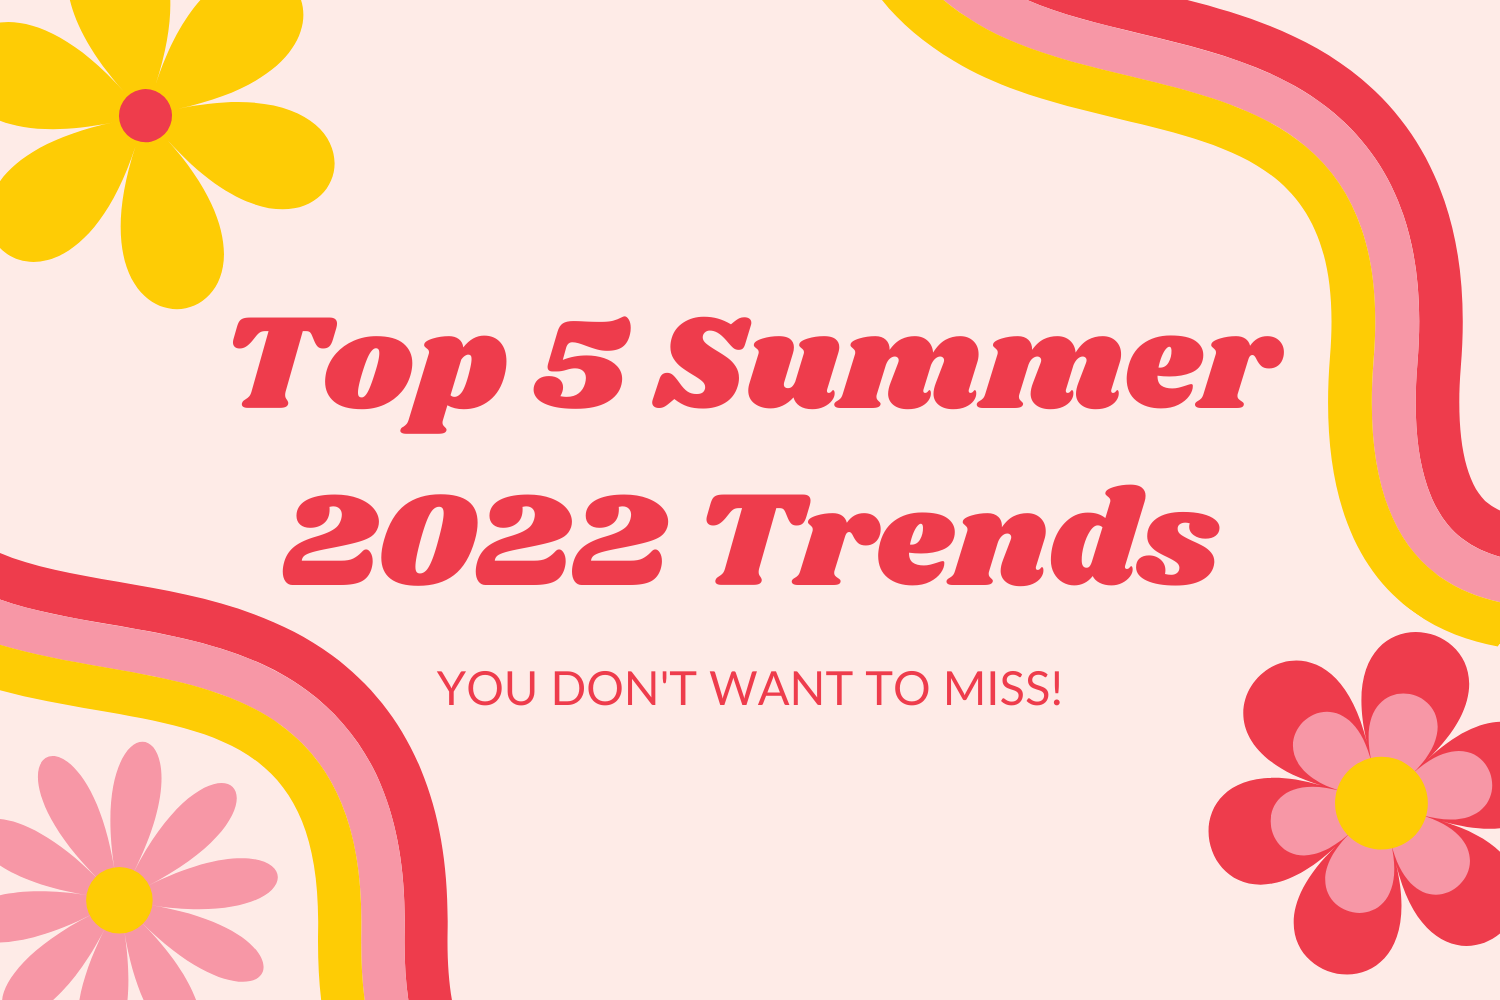 Top 5 Summer 2022 Trends!